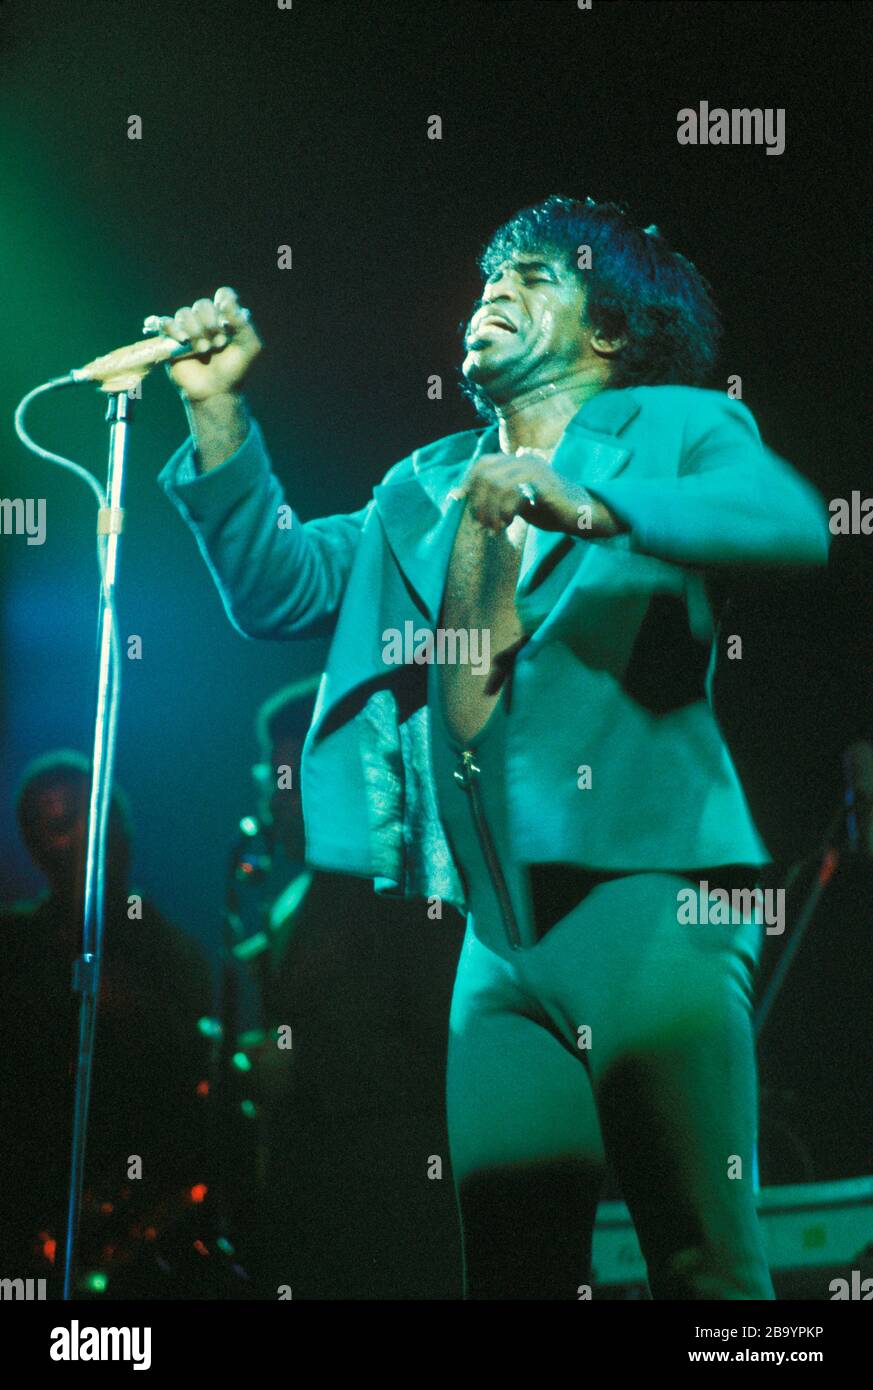 James Brown le Dieu Père de l'âme se présentant sur scène Rainbow Theatre Londres 1973 Banque D'Images